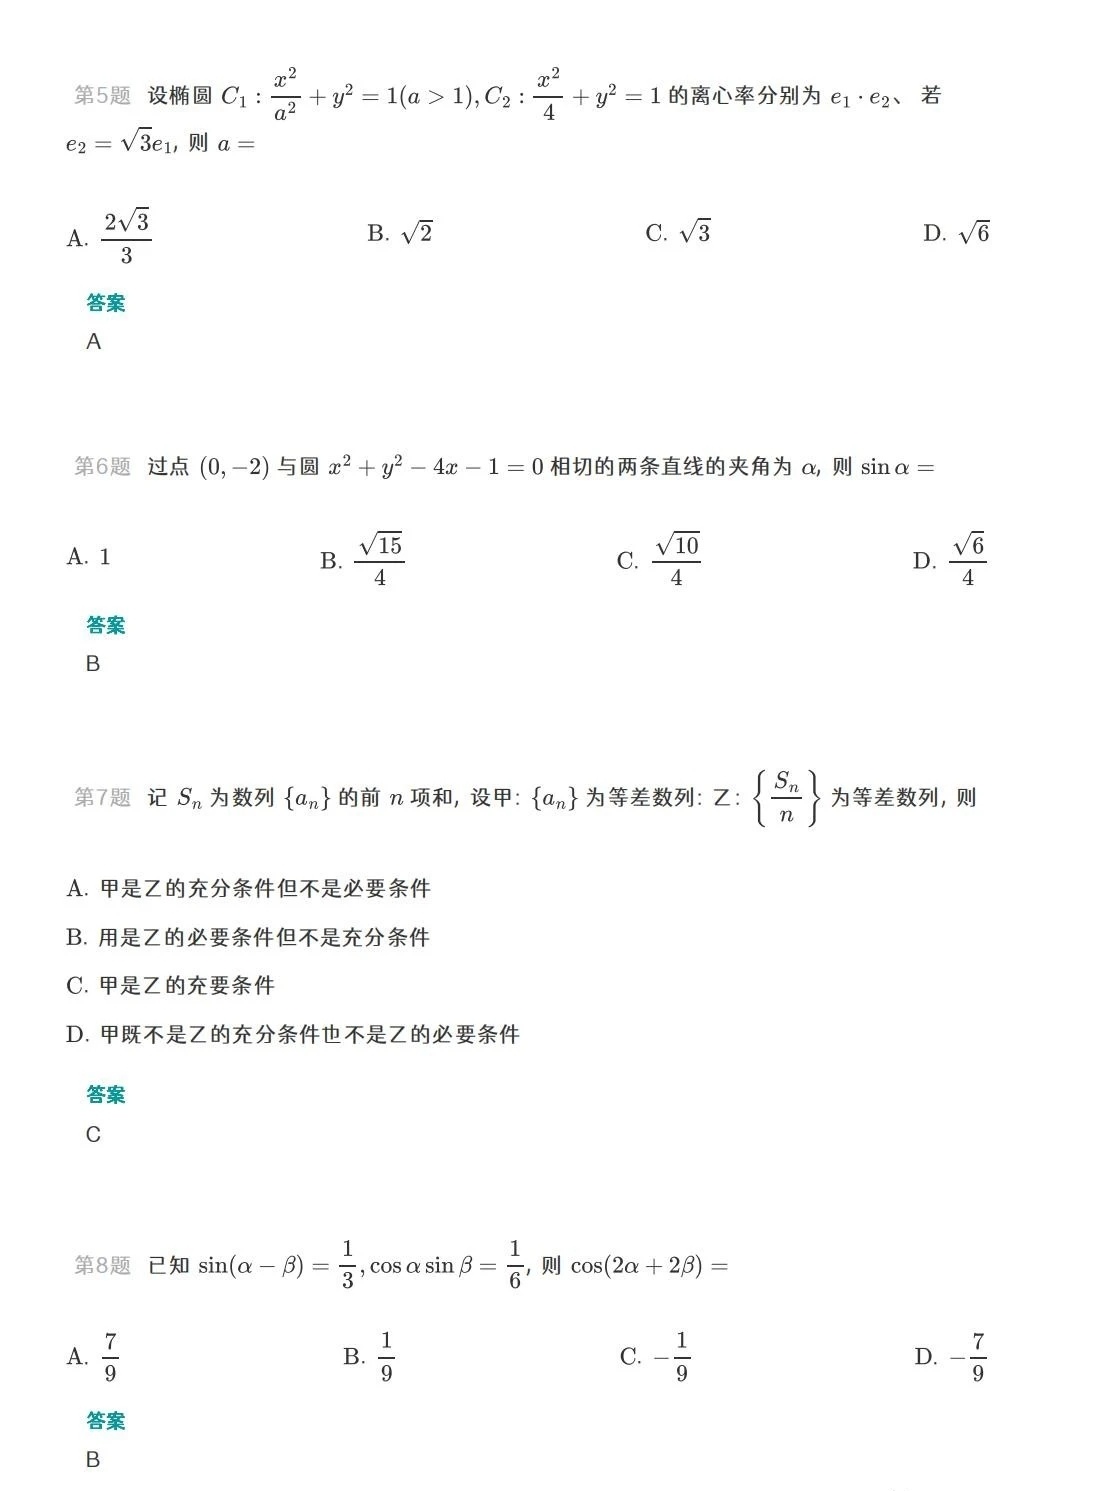 广东高考数学2023试卷及答案